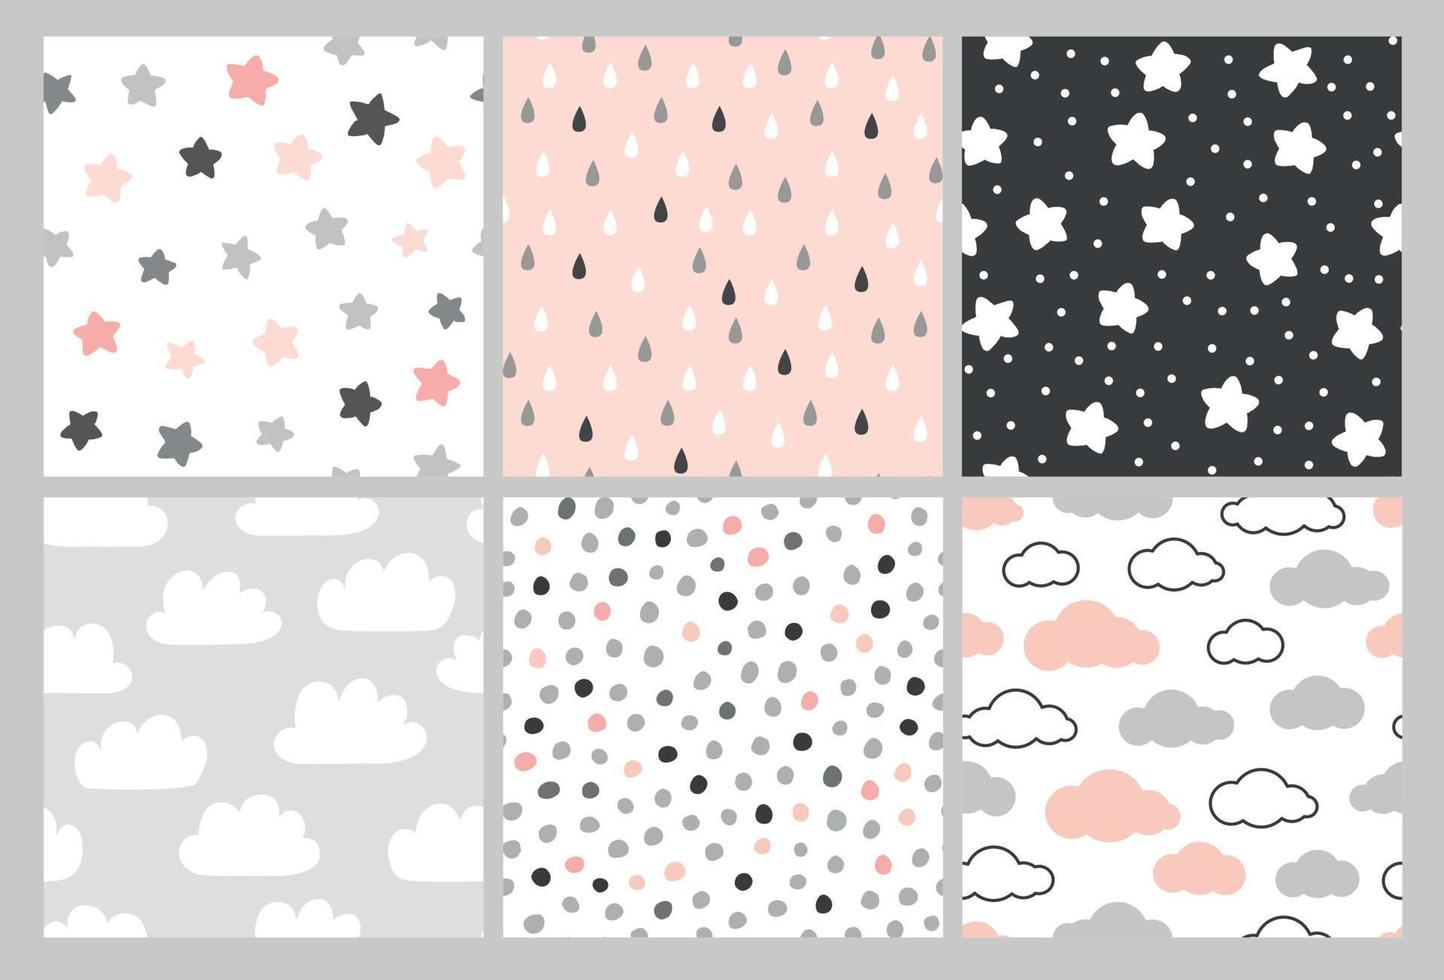 lindo patrón con nubes, estrellas y gotas de lluvia. fondo transparente de vector en estilo escandinavo. ilustración para bebés, niños.